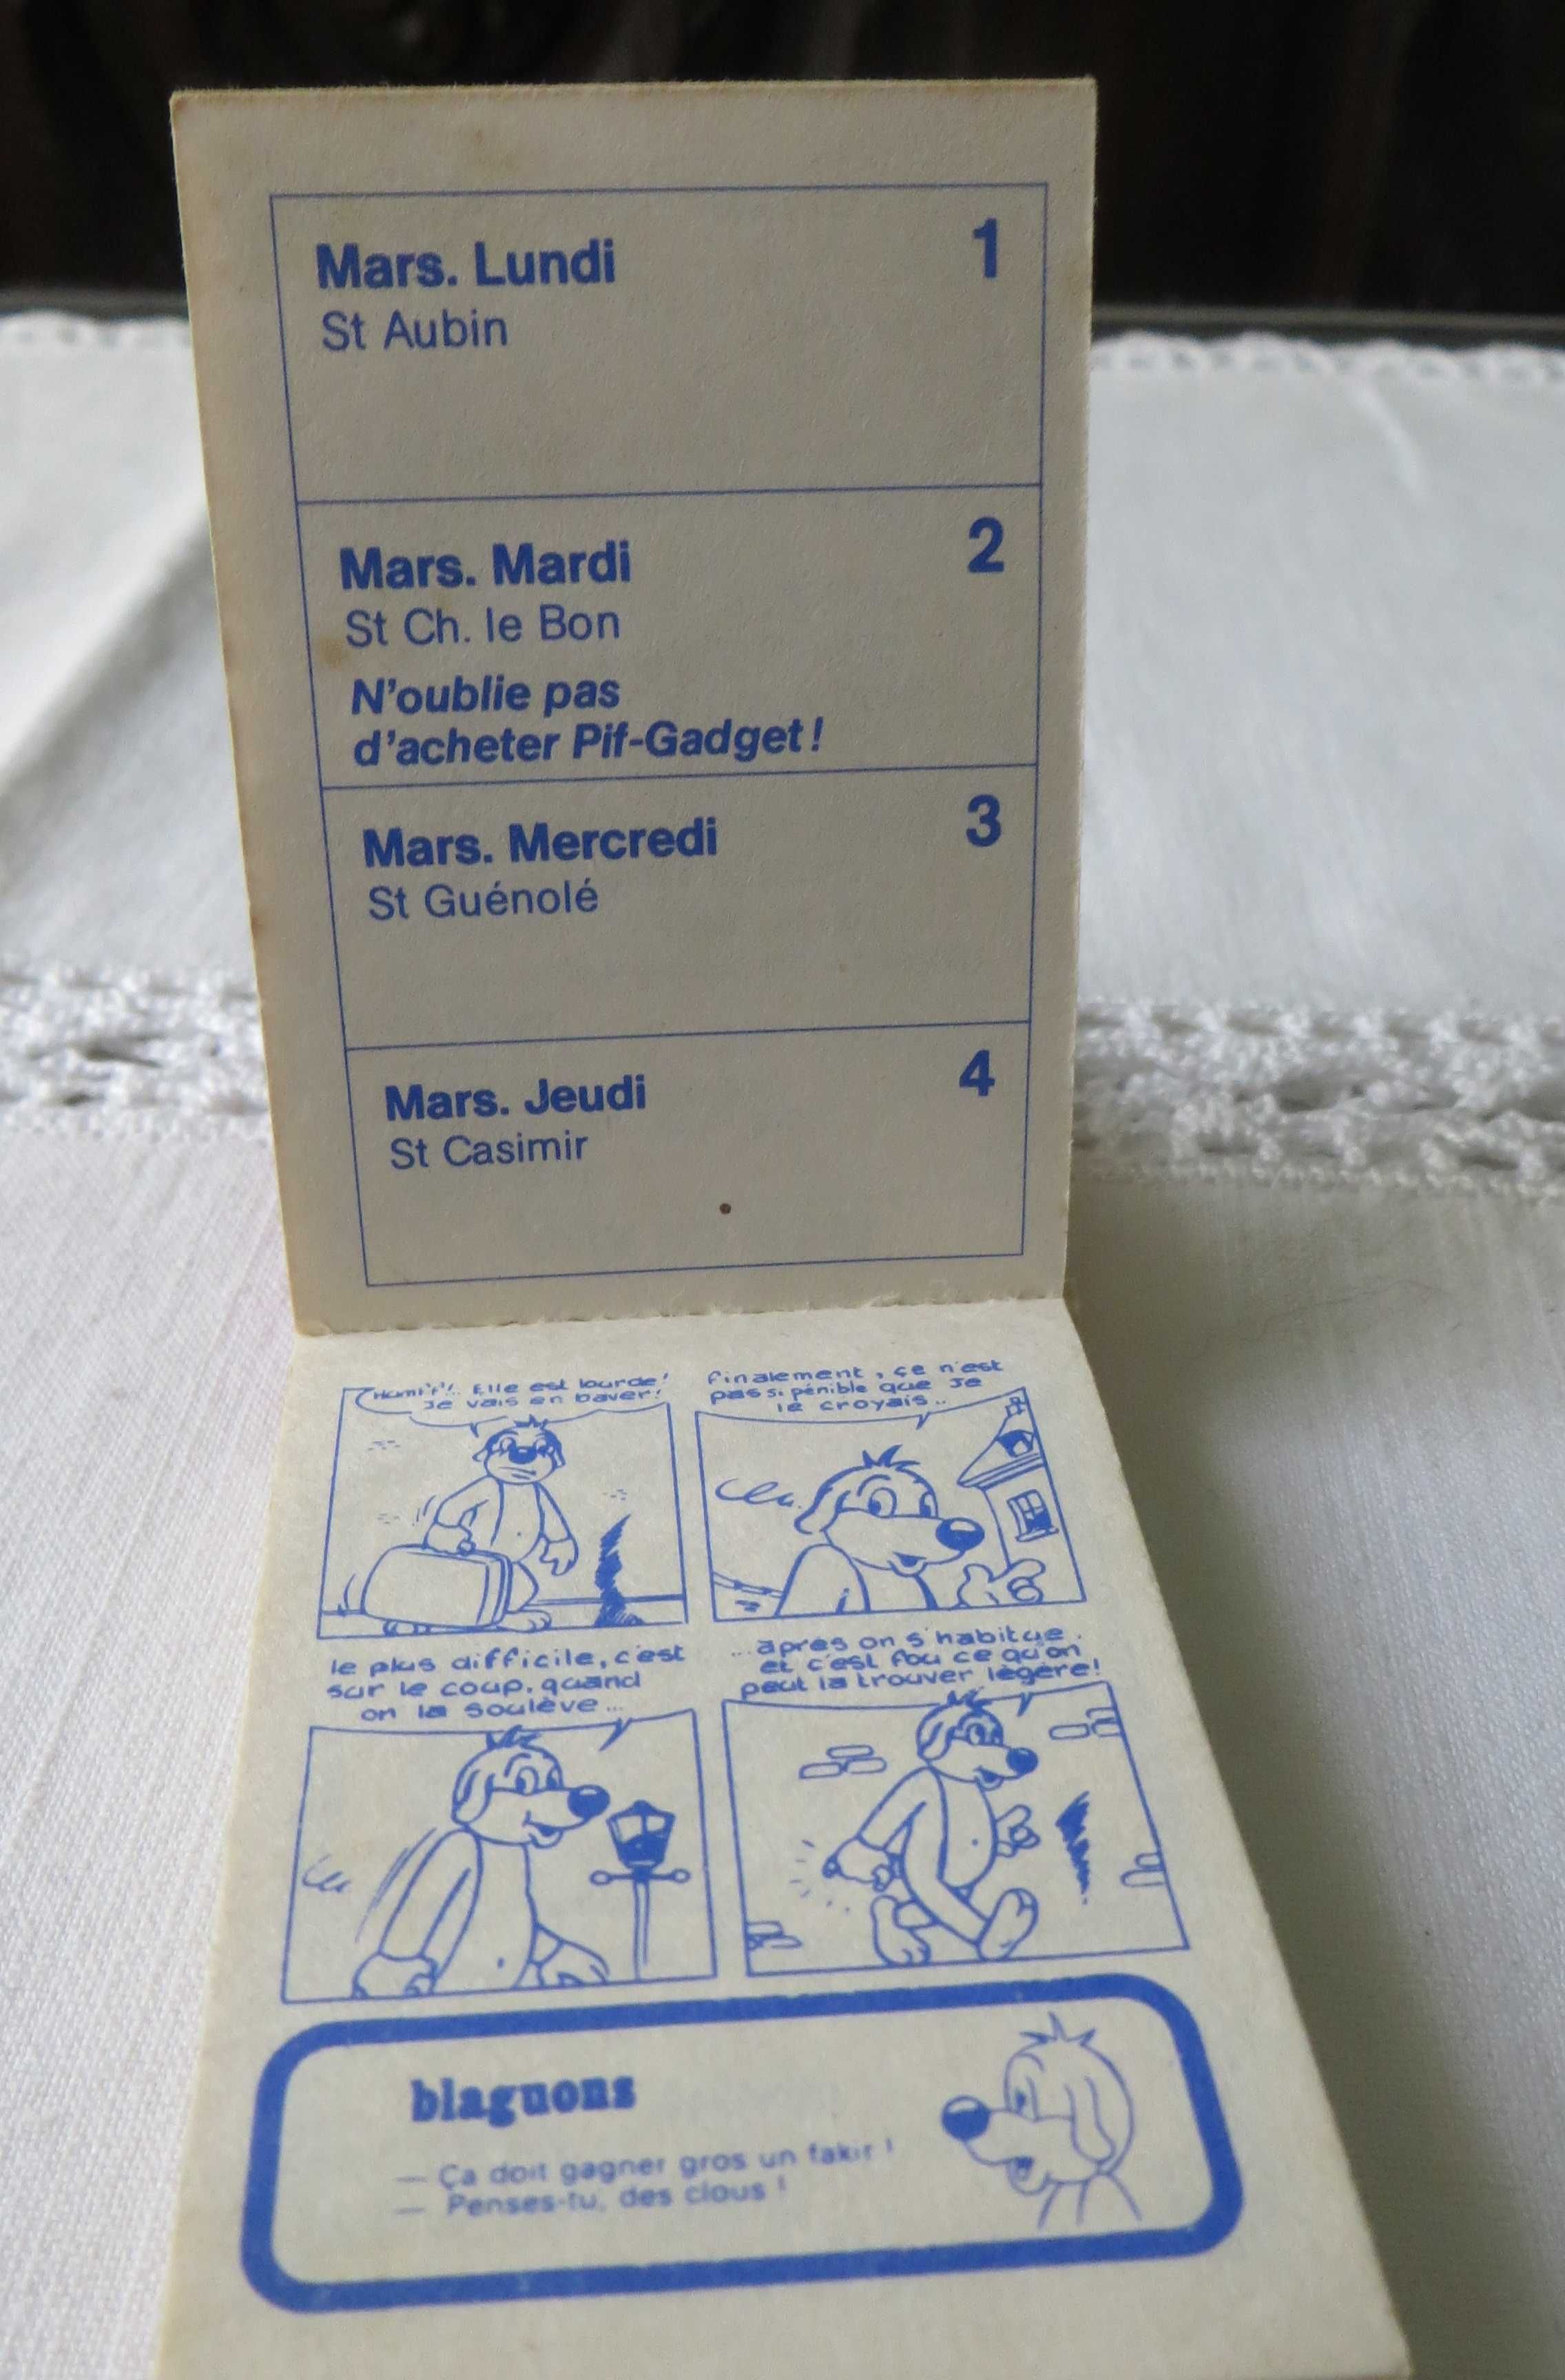 Mini Almanaque Calendário 1982 c/ Banda Desenhada 7 x 5 cm, Aba 1,5 cm